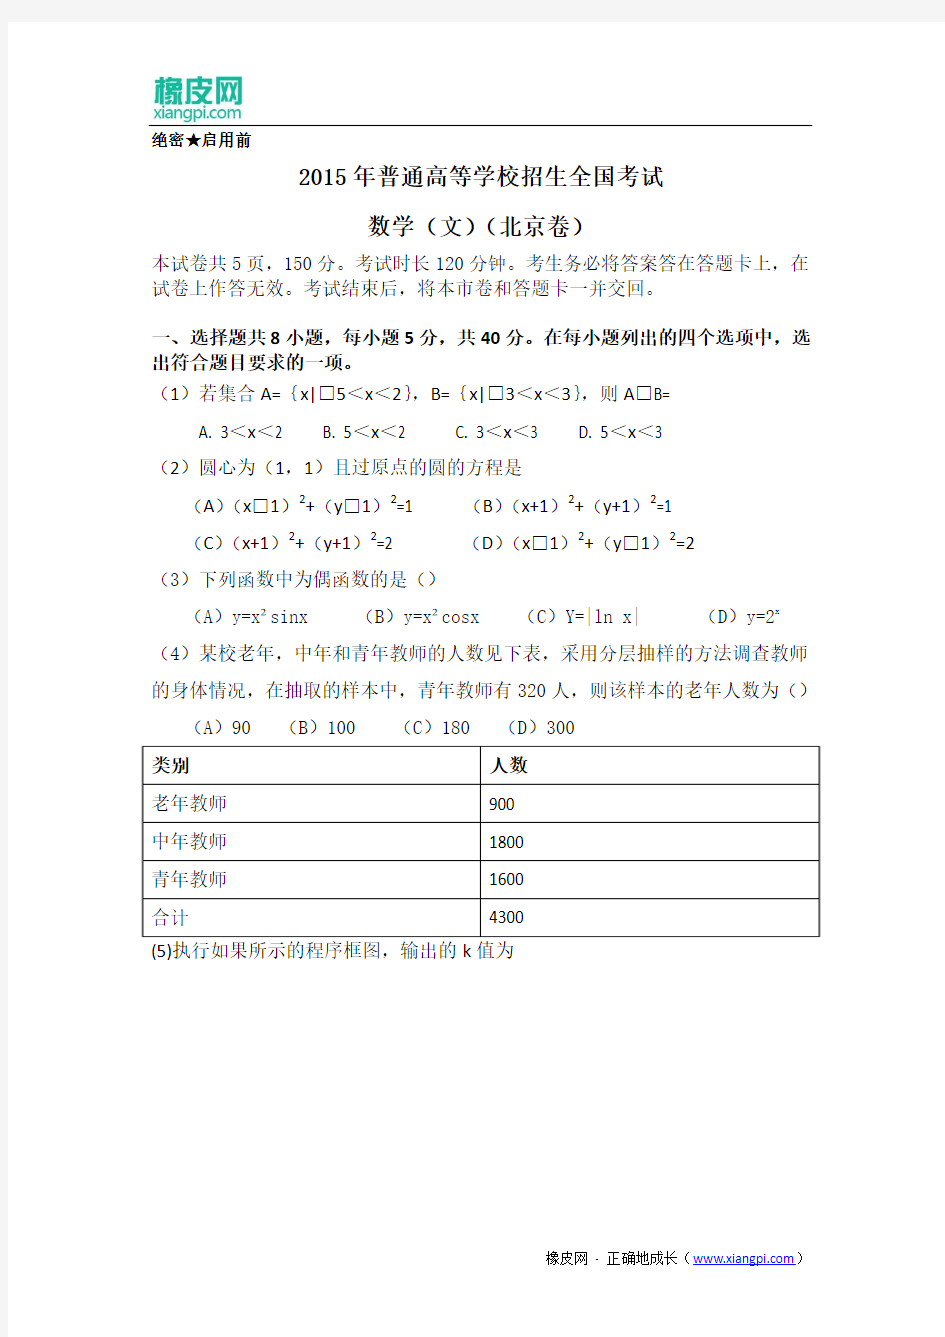 2015年高考试题——文科数学(北京卷)Word版无答案